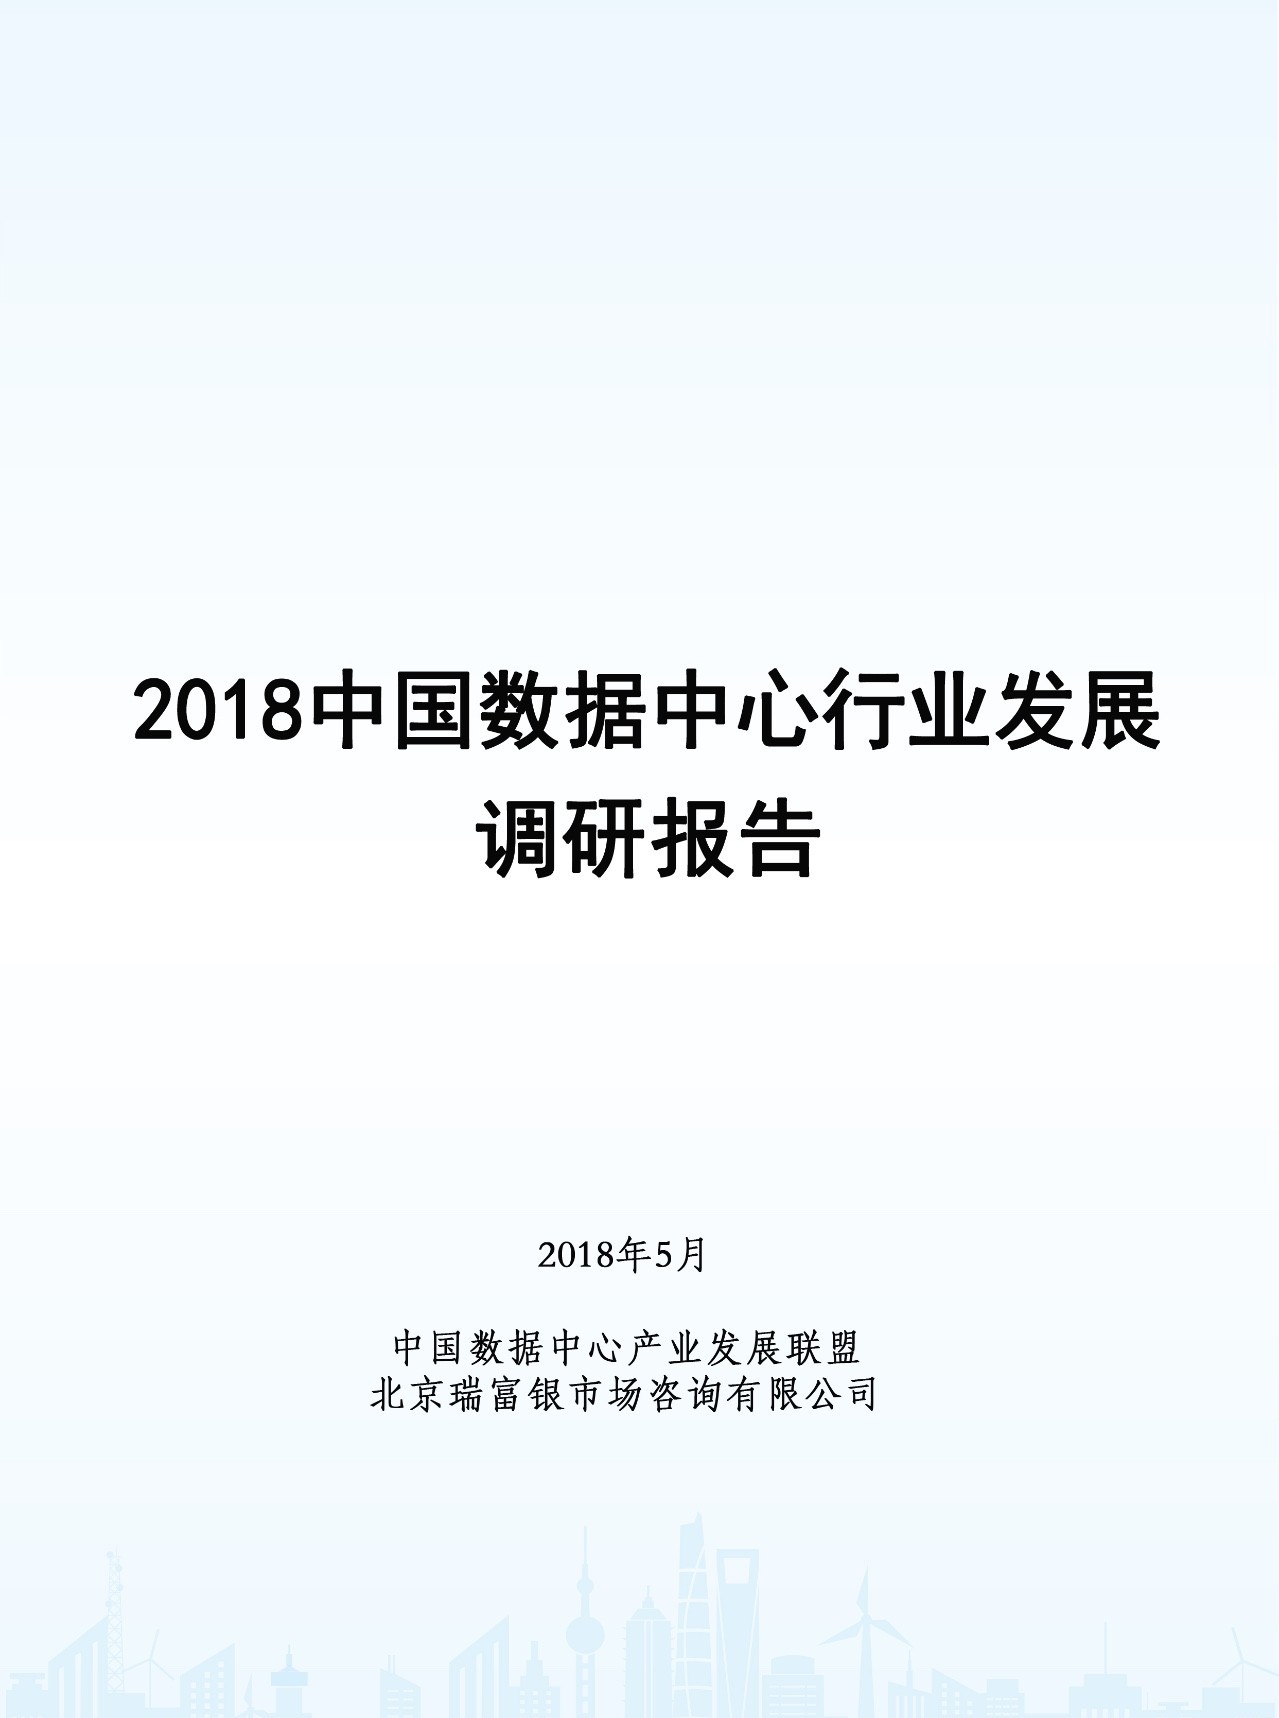 张念录理事长发布2018中国数据中心行业发展调研报告